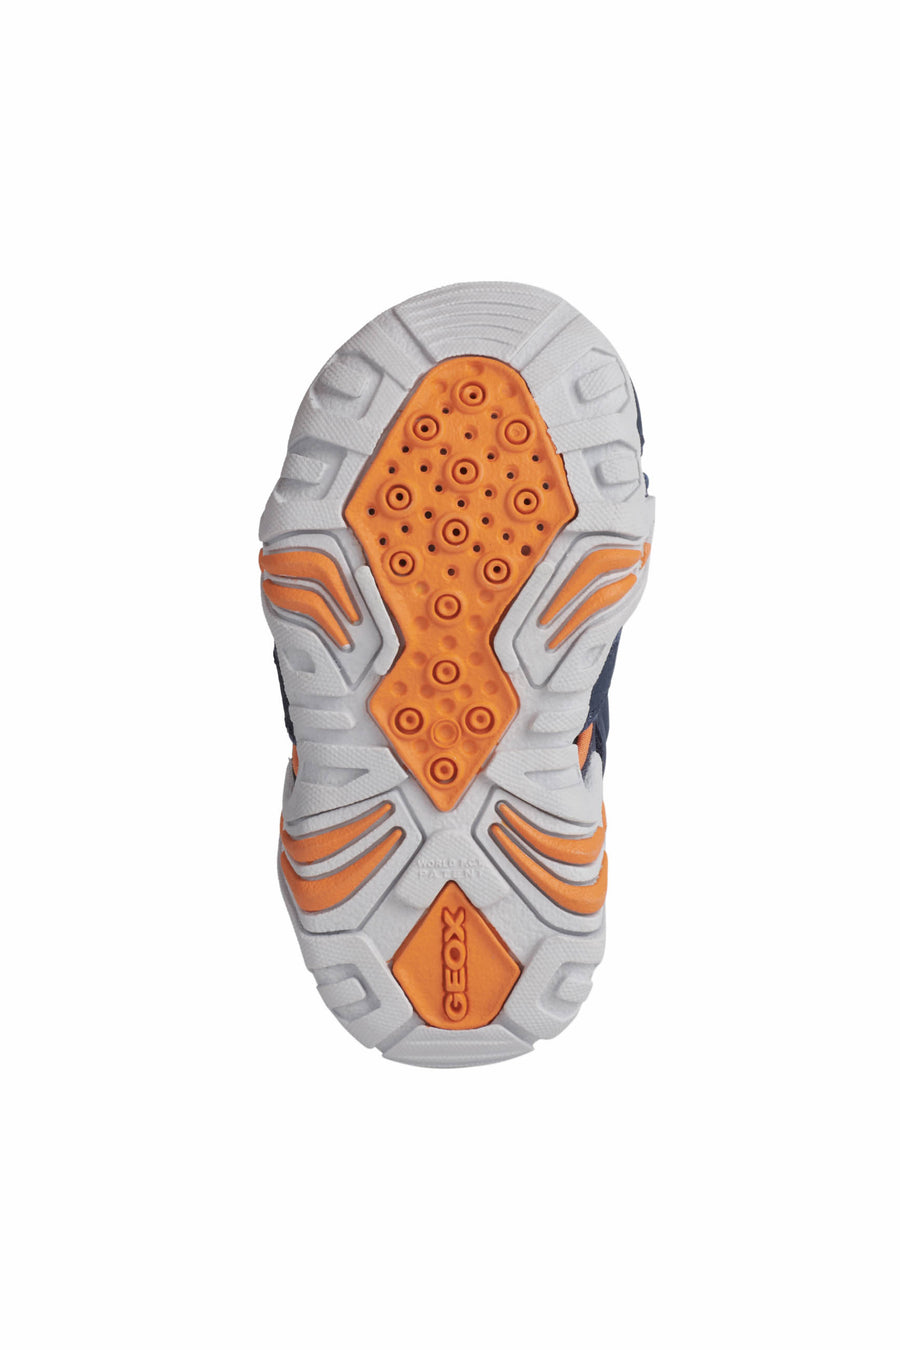 Geox Waterproof Sandals | Kraze | Navy & Orange